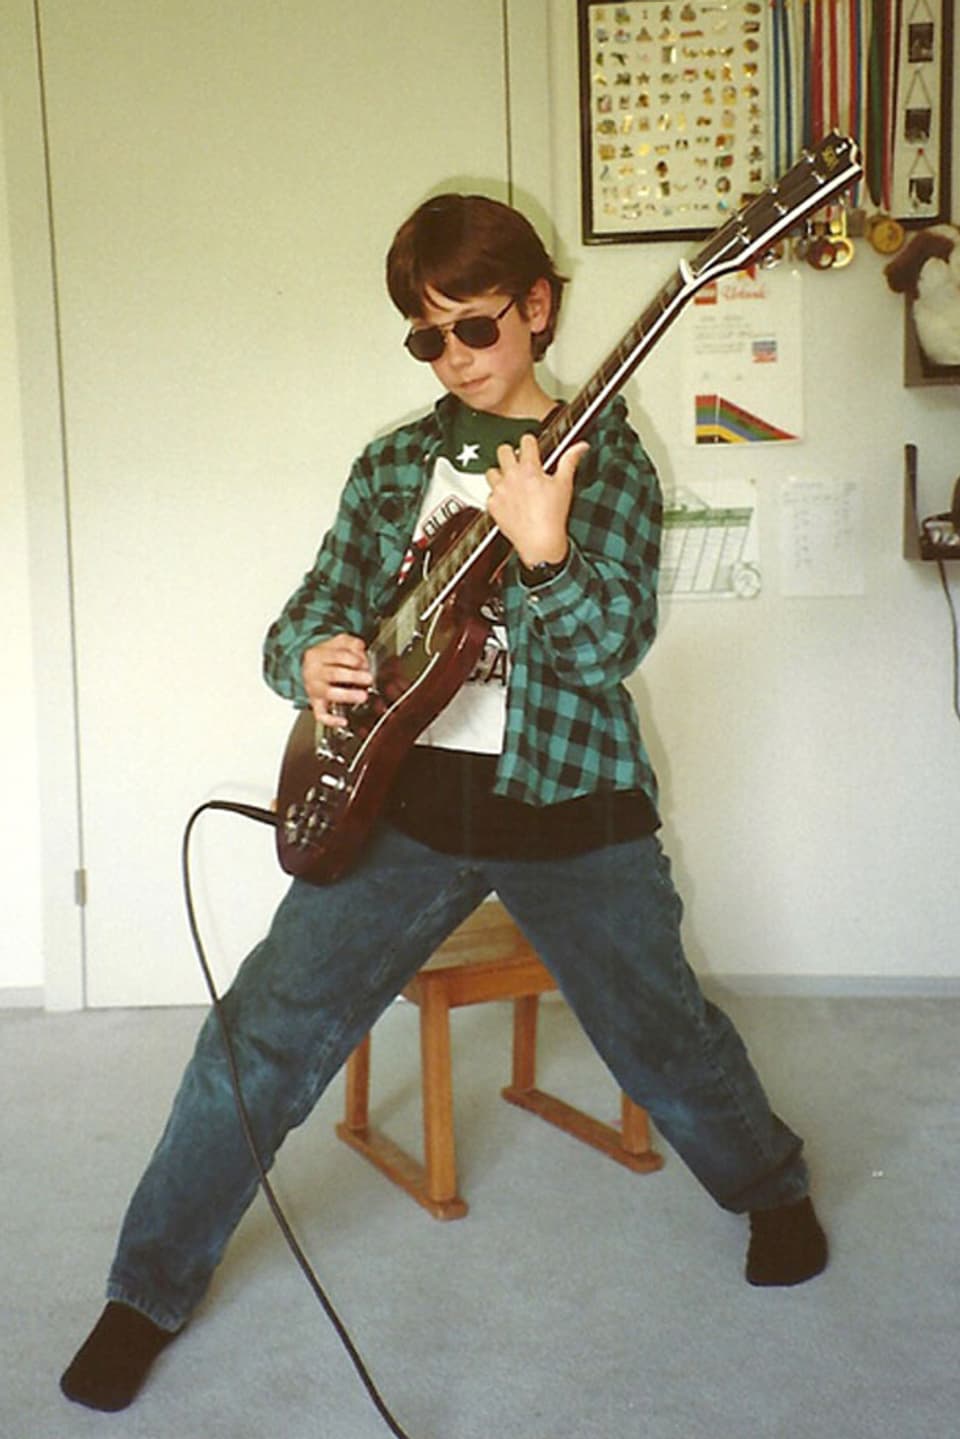 Schon früh die Idole nachgeahmt: Gitarre von Angus Young, Hemd von Curt Cobain.